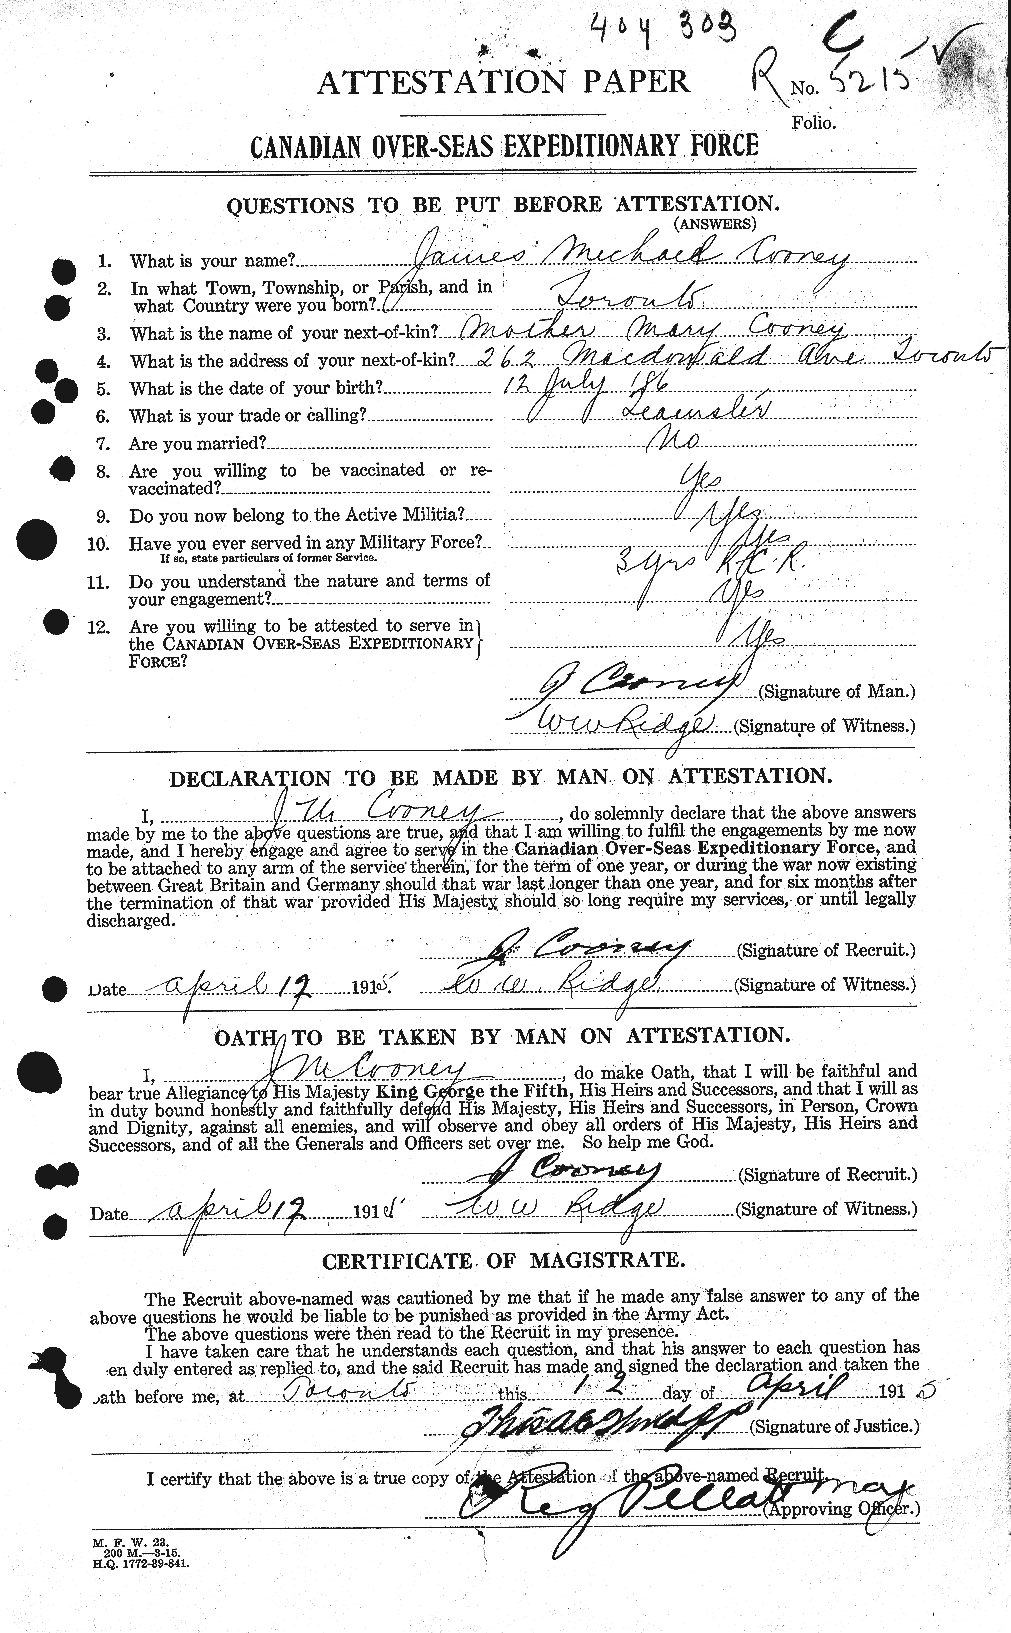 Dossiers du Personnel de la Première Guerre mondiale - CEC 055210a